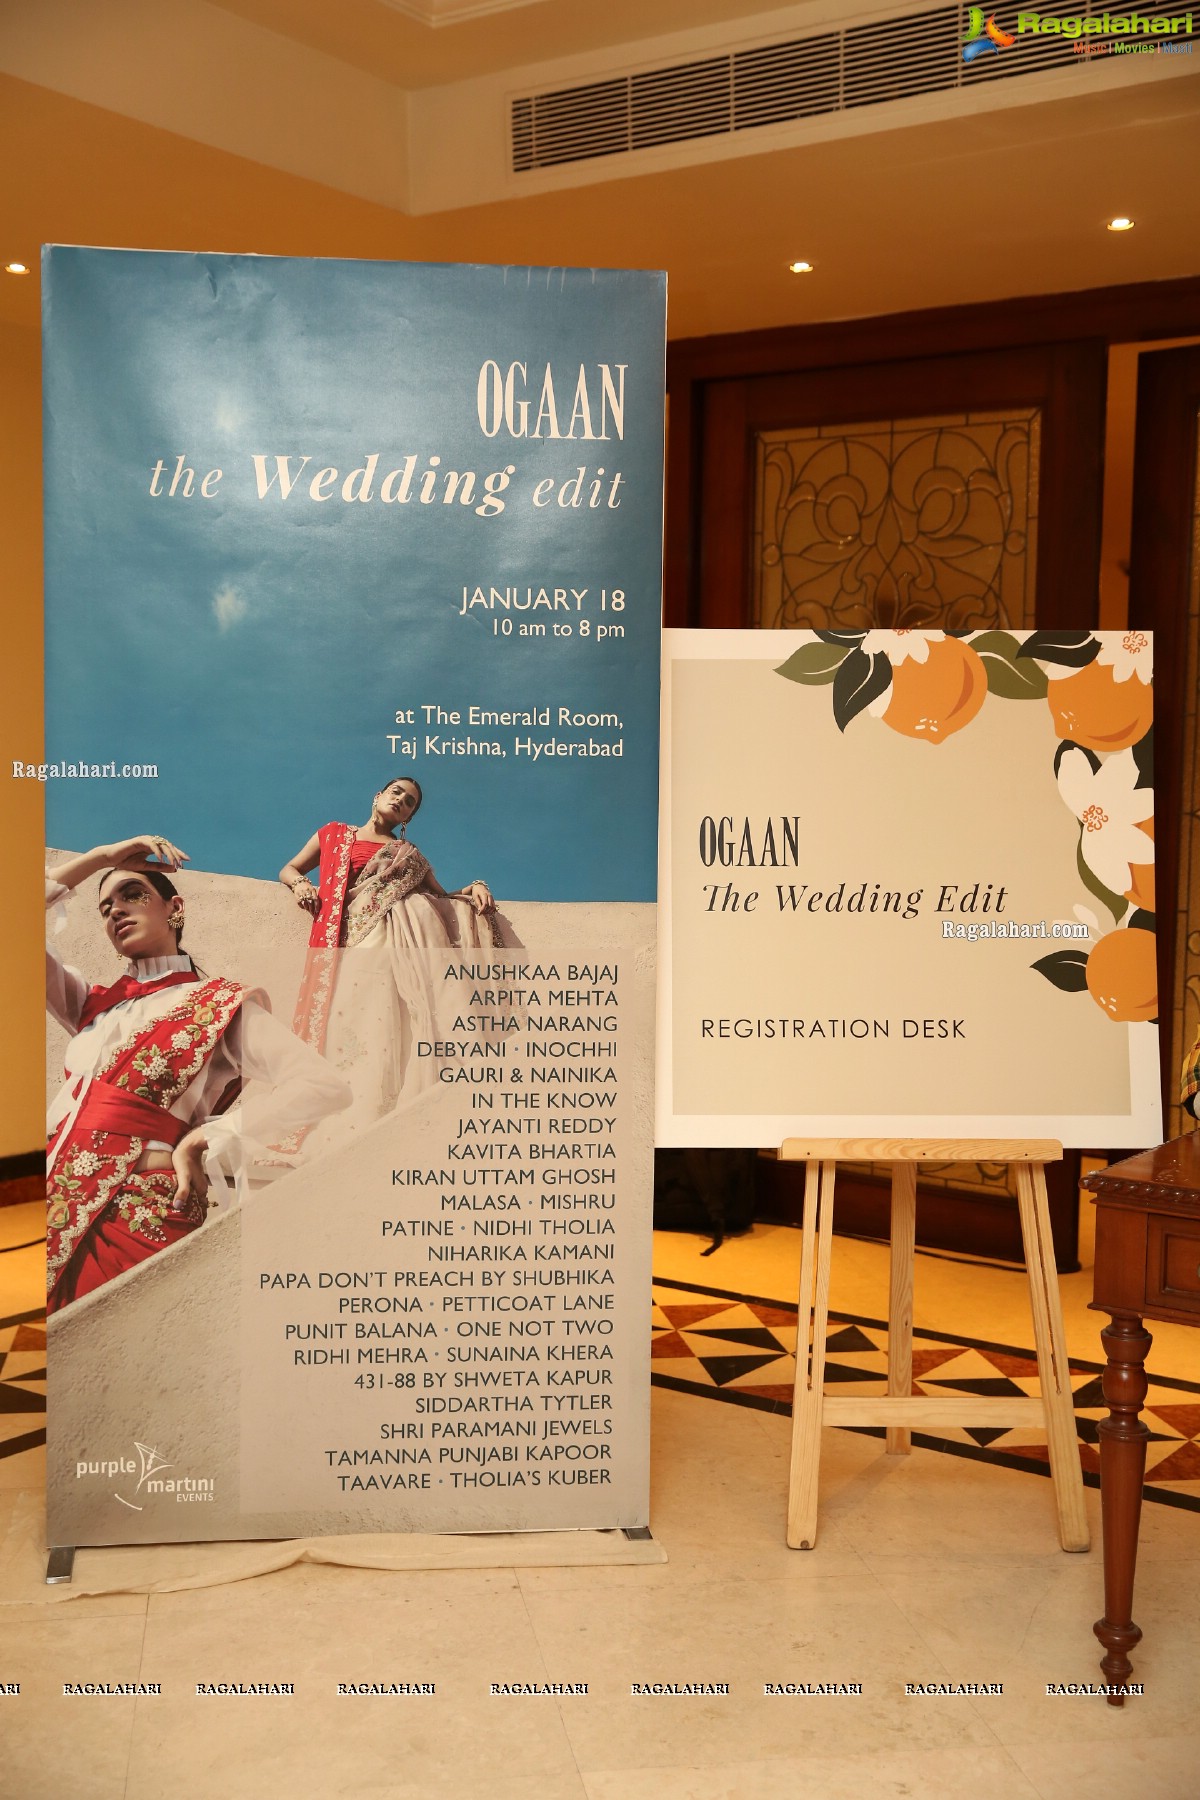 Ogaan - The Wedding Edit Kicks Off at Taj Krishna